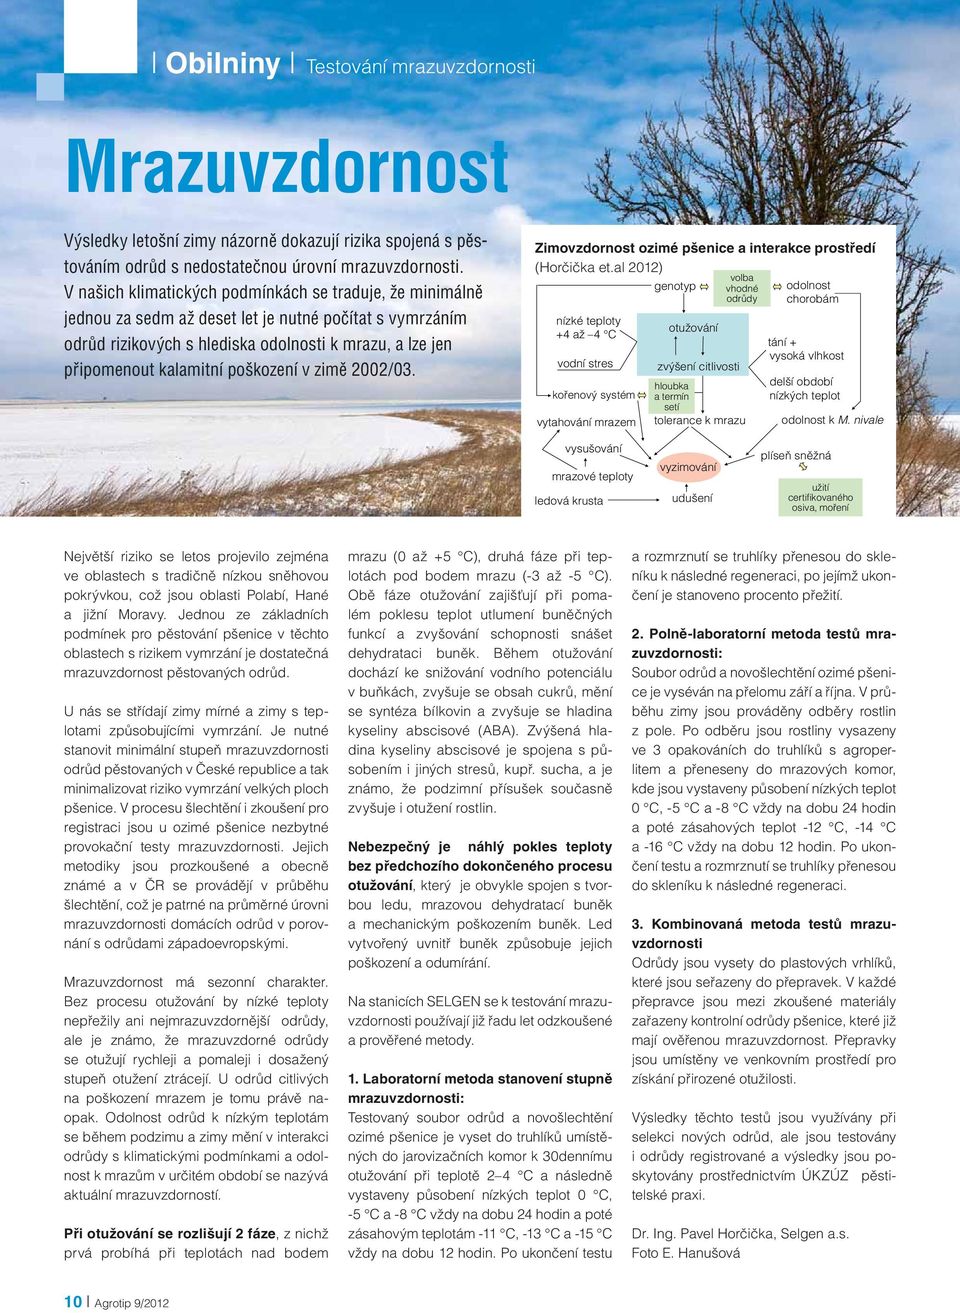 poškození v zimě 2002/03. Zimovzdornost ozimé pšenice a interakce prostředí (Horčička et.